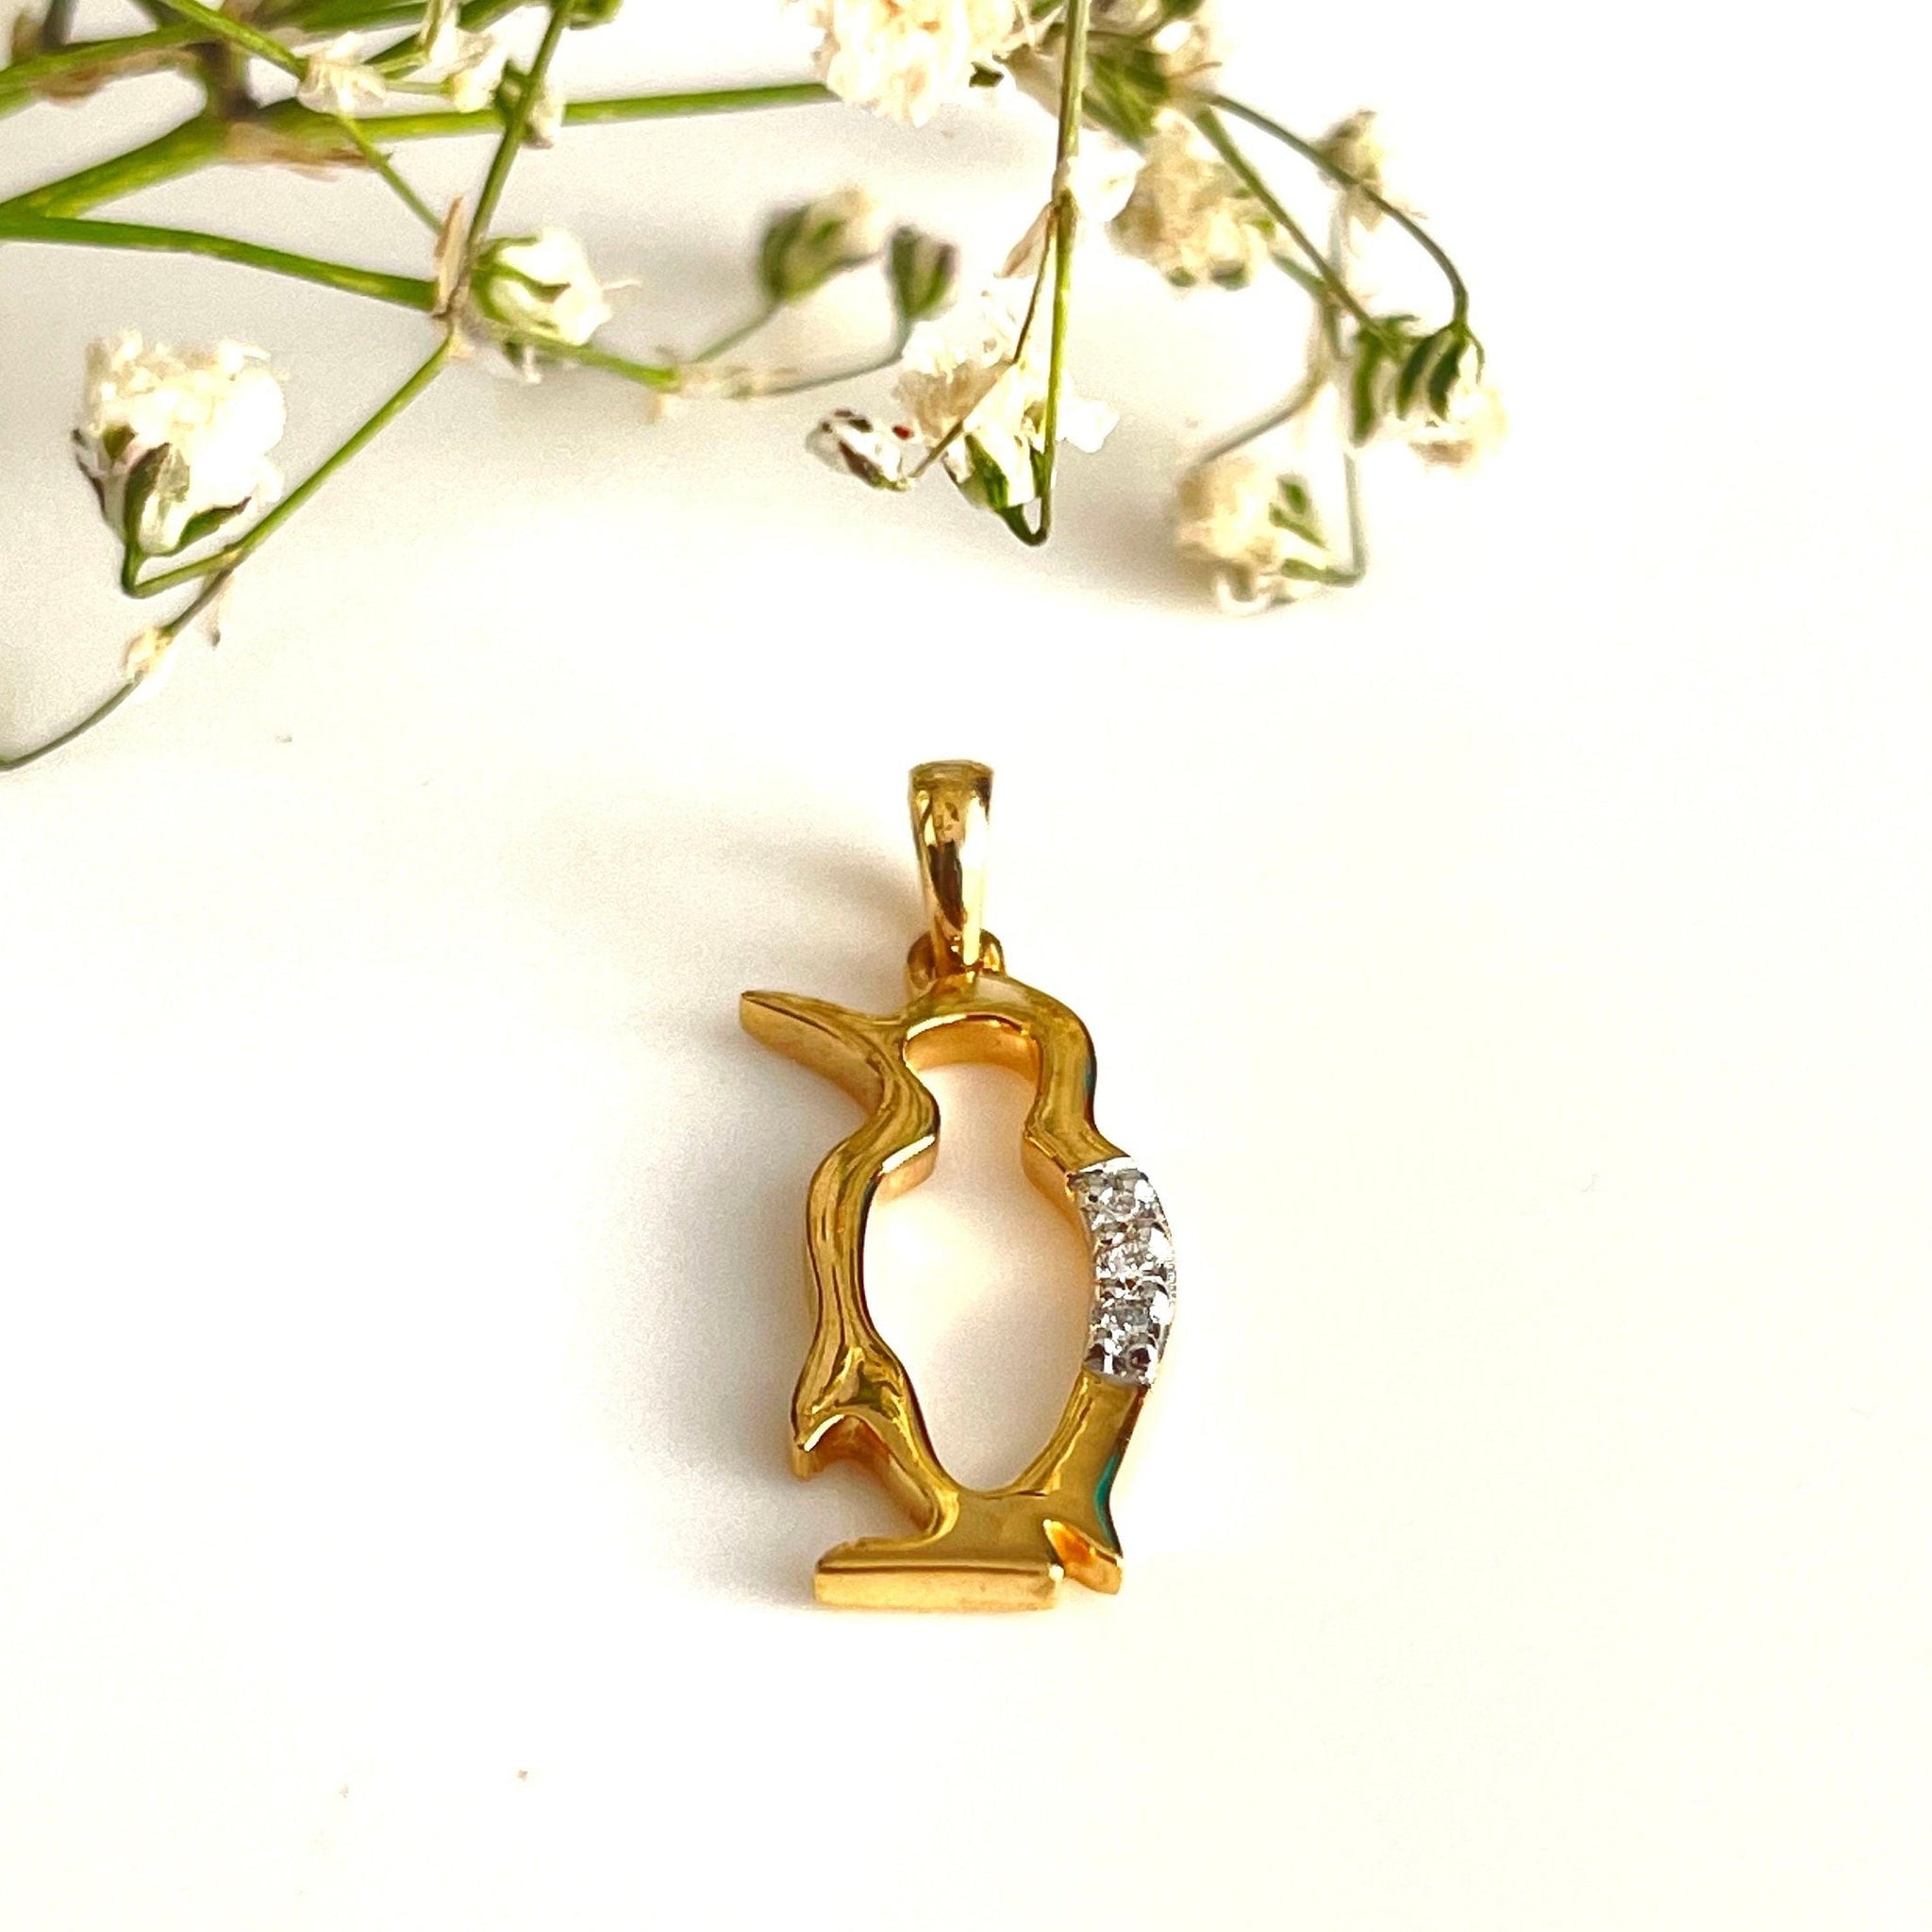 Pendentif pingouin diamant, breloque pingouin, pendentif pingouin or, collier diamant pingouin, pendentif diamant pour homme, cadeau pour maman, cadeau pour maman